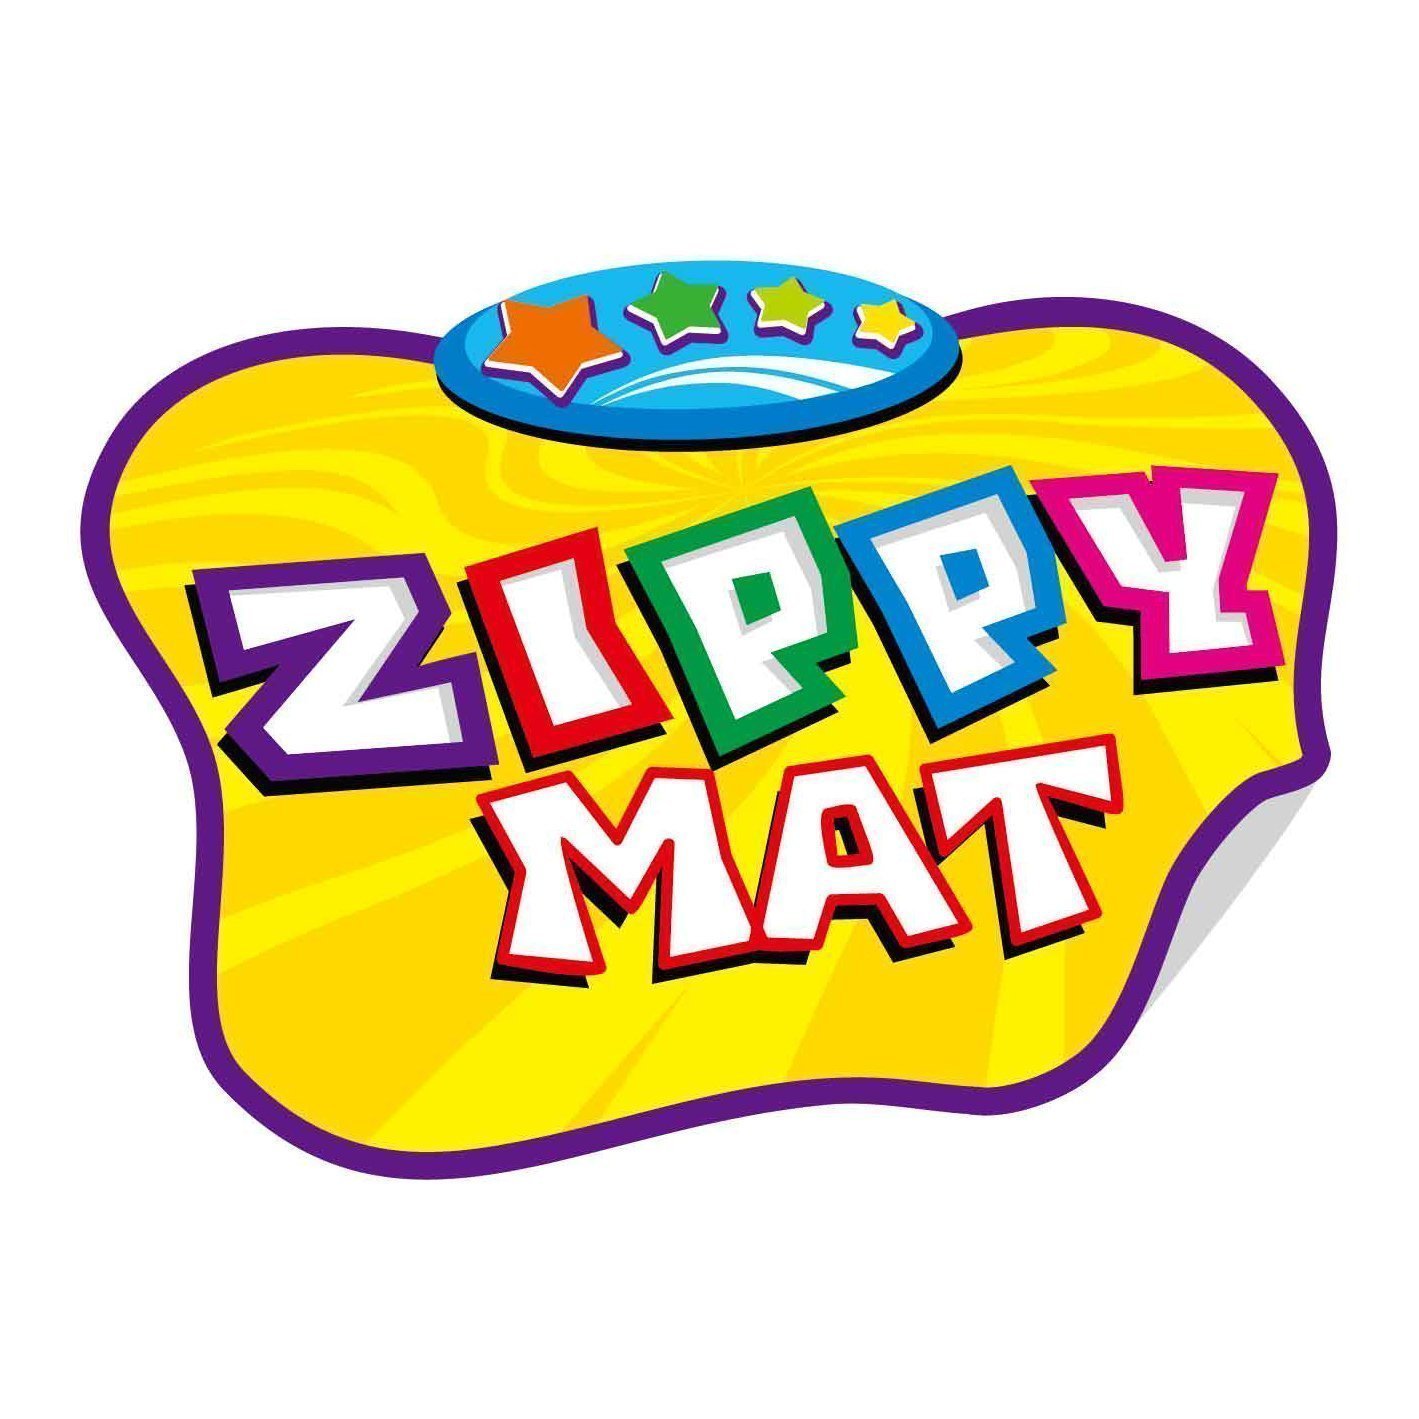 Zippy mat